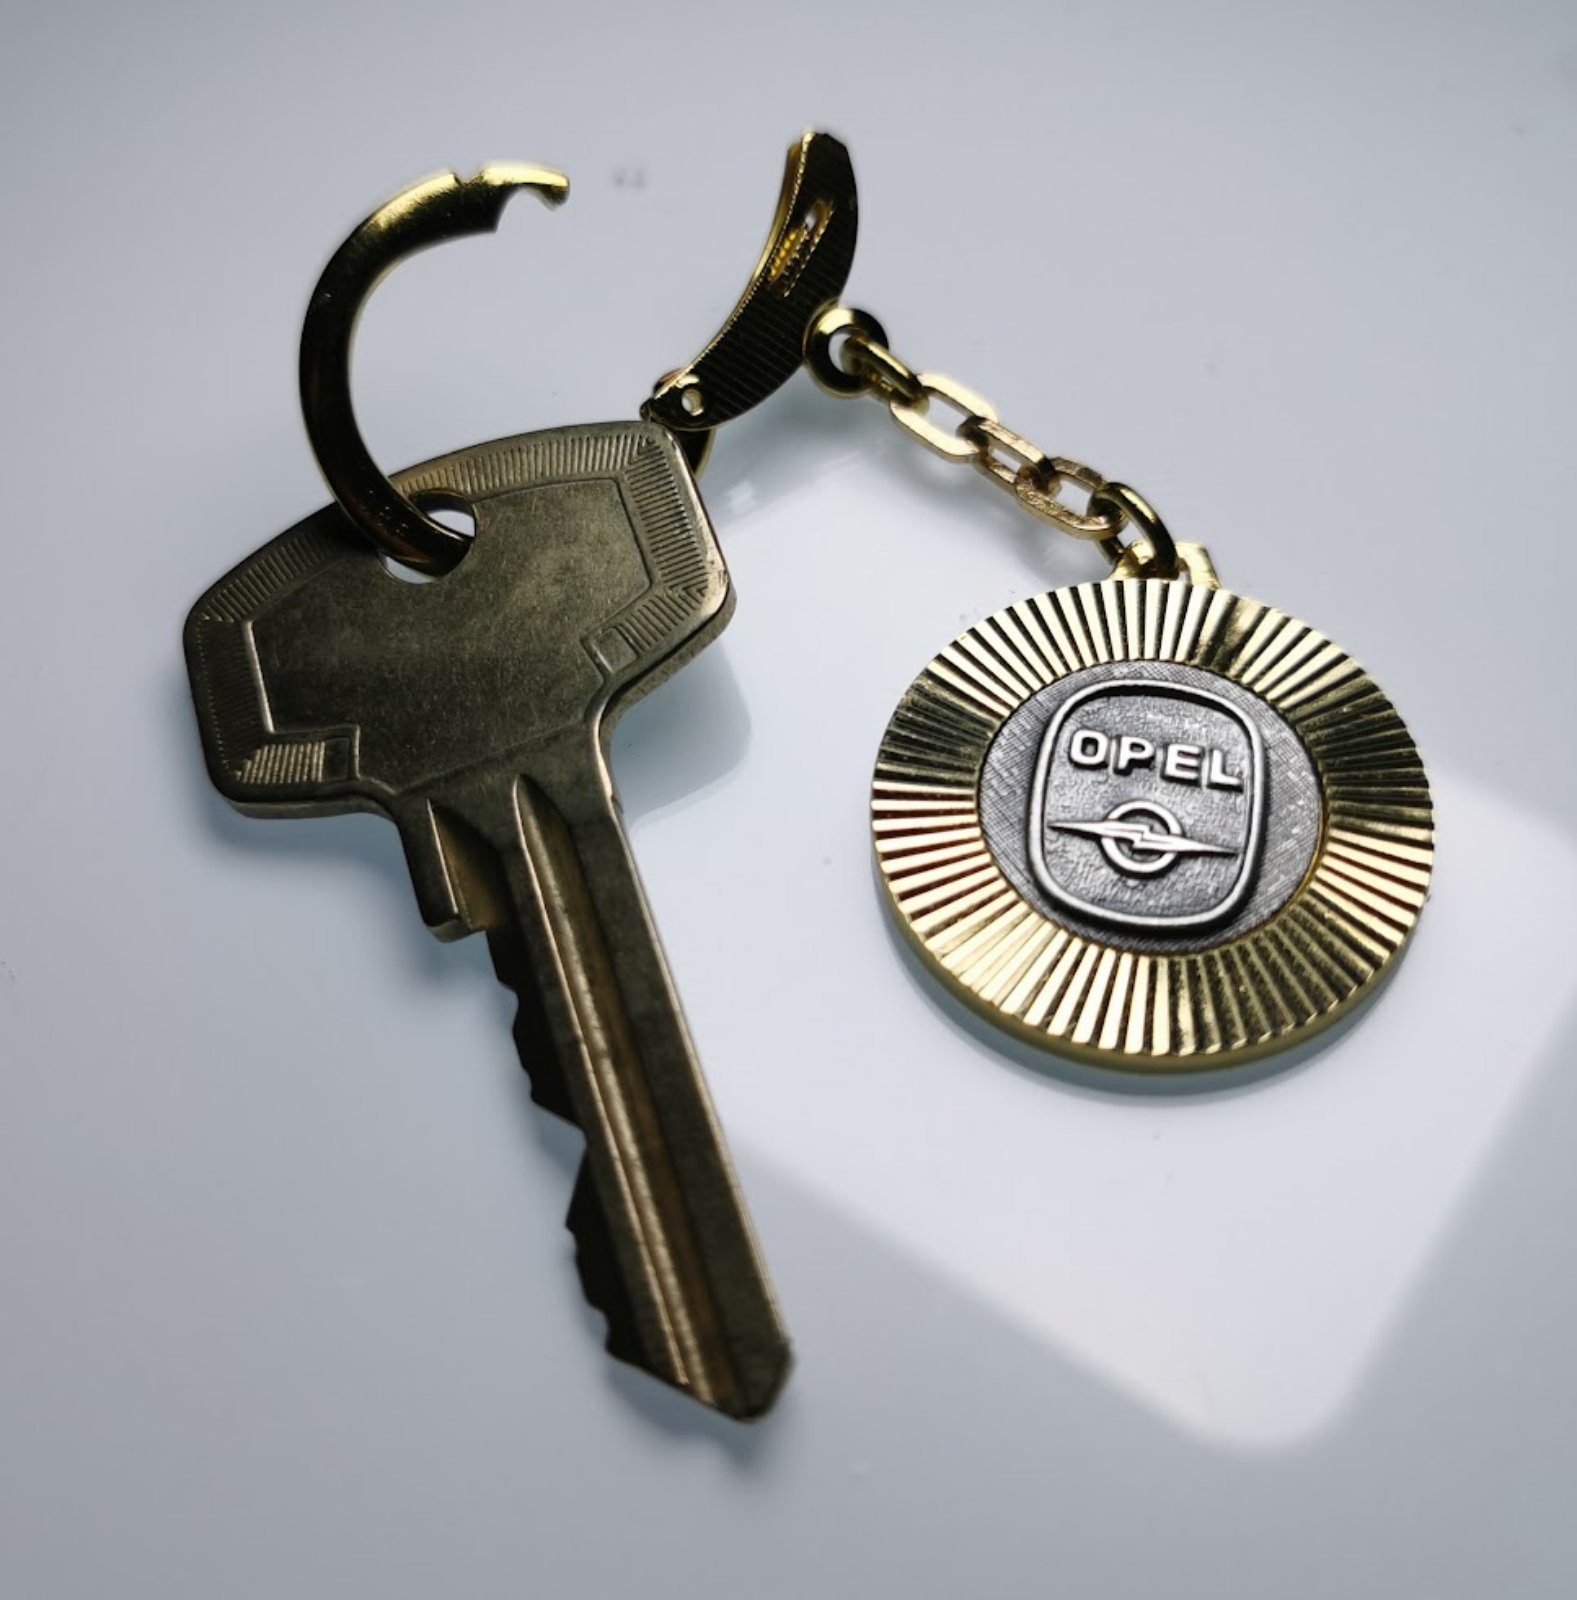 Emblem Lüfterrad aus Diamantschliff OPEL Schlüsselanhänger Metall 3D 1956 Relief HR Metall Anhänger Autocomfort